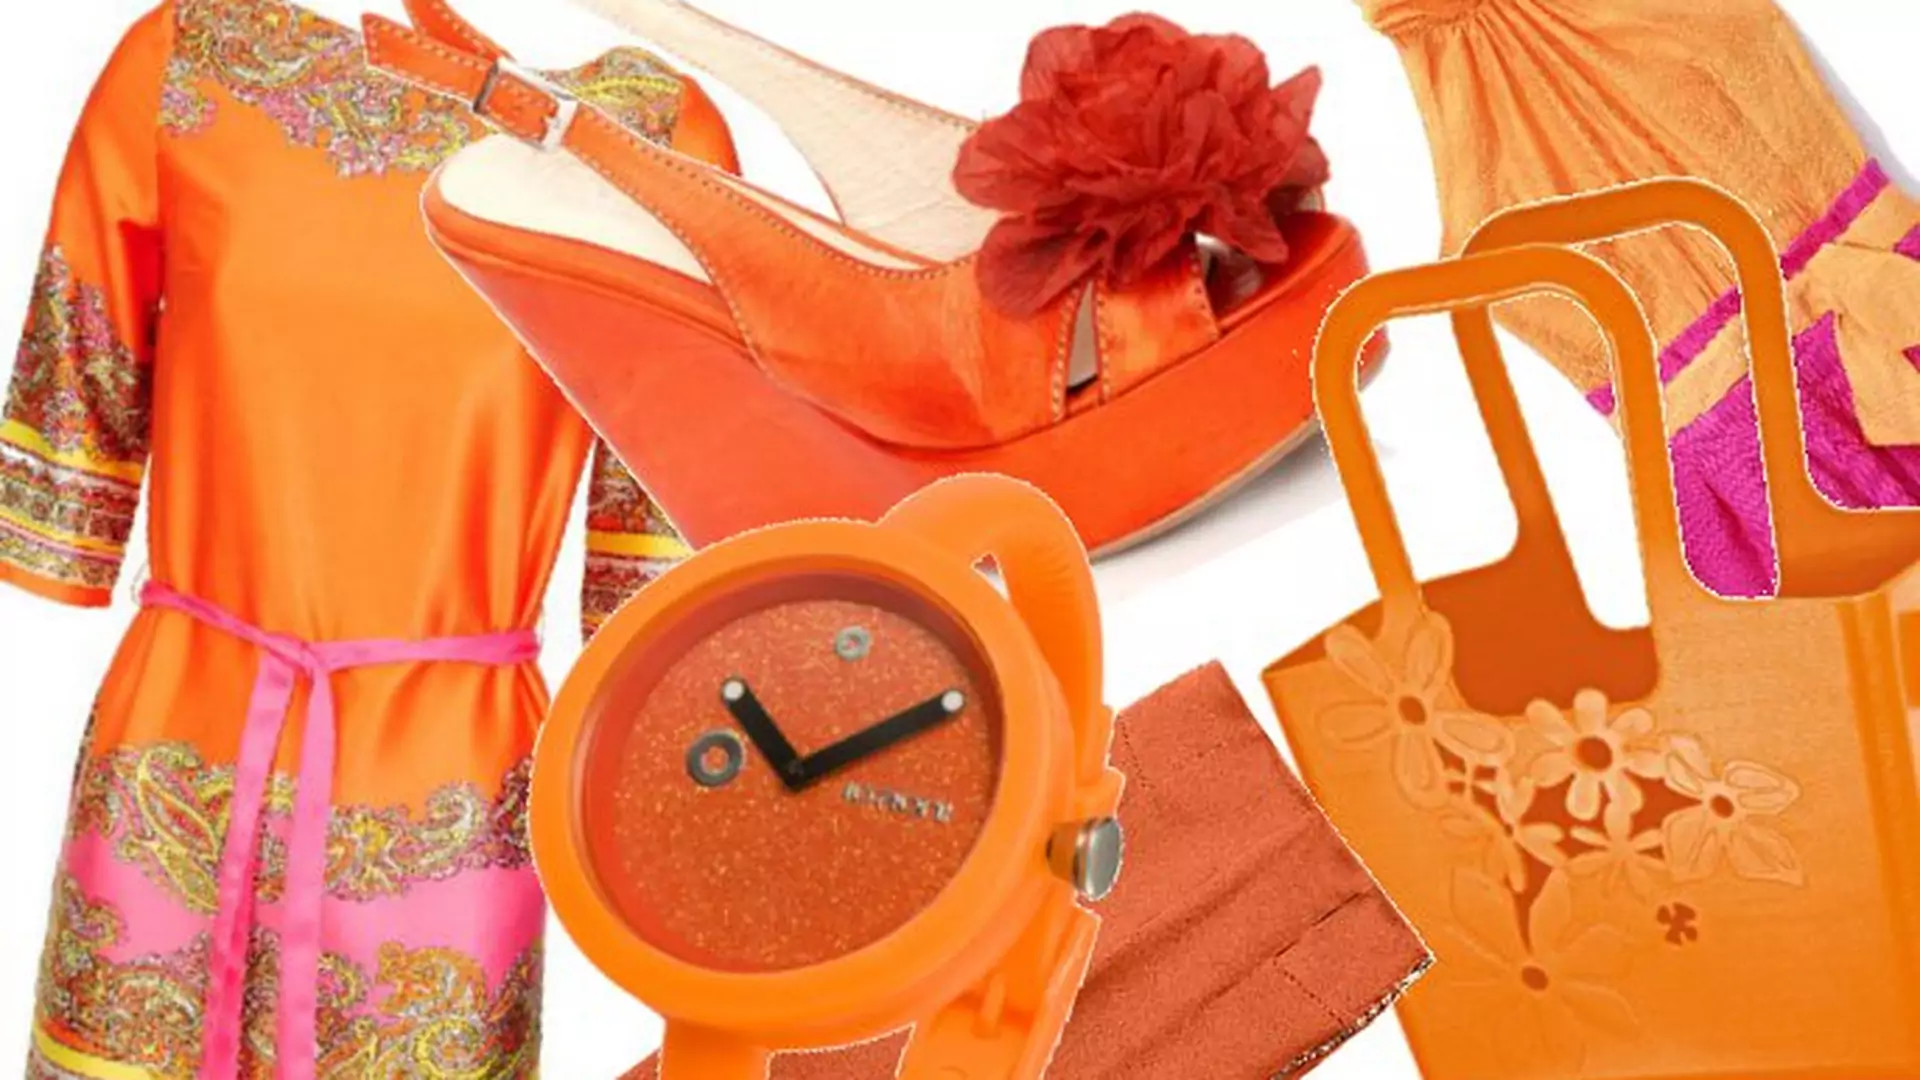 Mechaniczna pomarańcza! 25 ubrań, butów i dodatków w kolorze oranżu